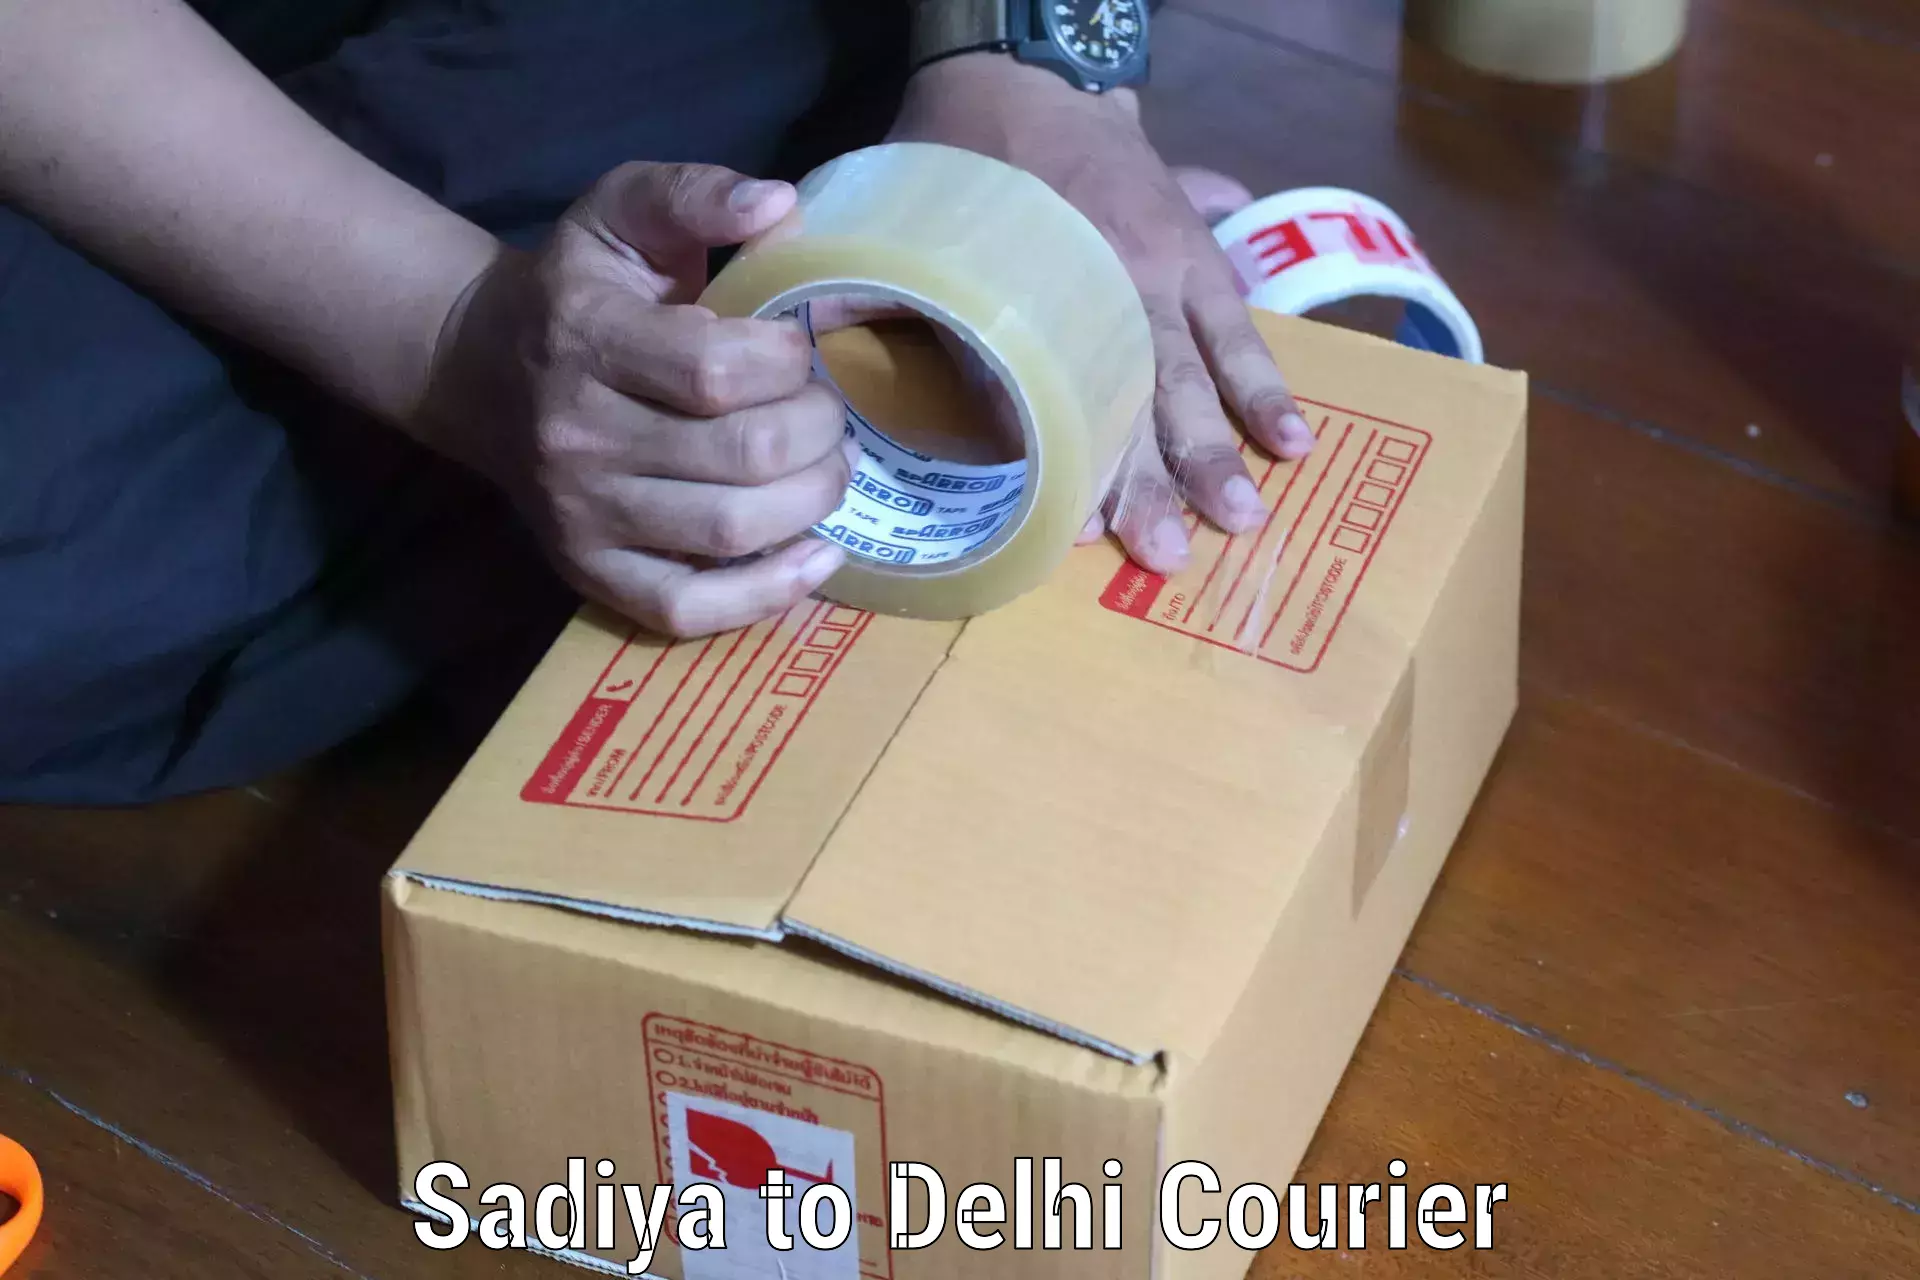 International parcel service Sadiya to University of Delhi